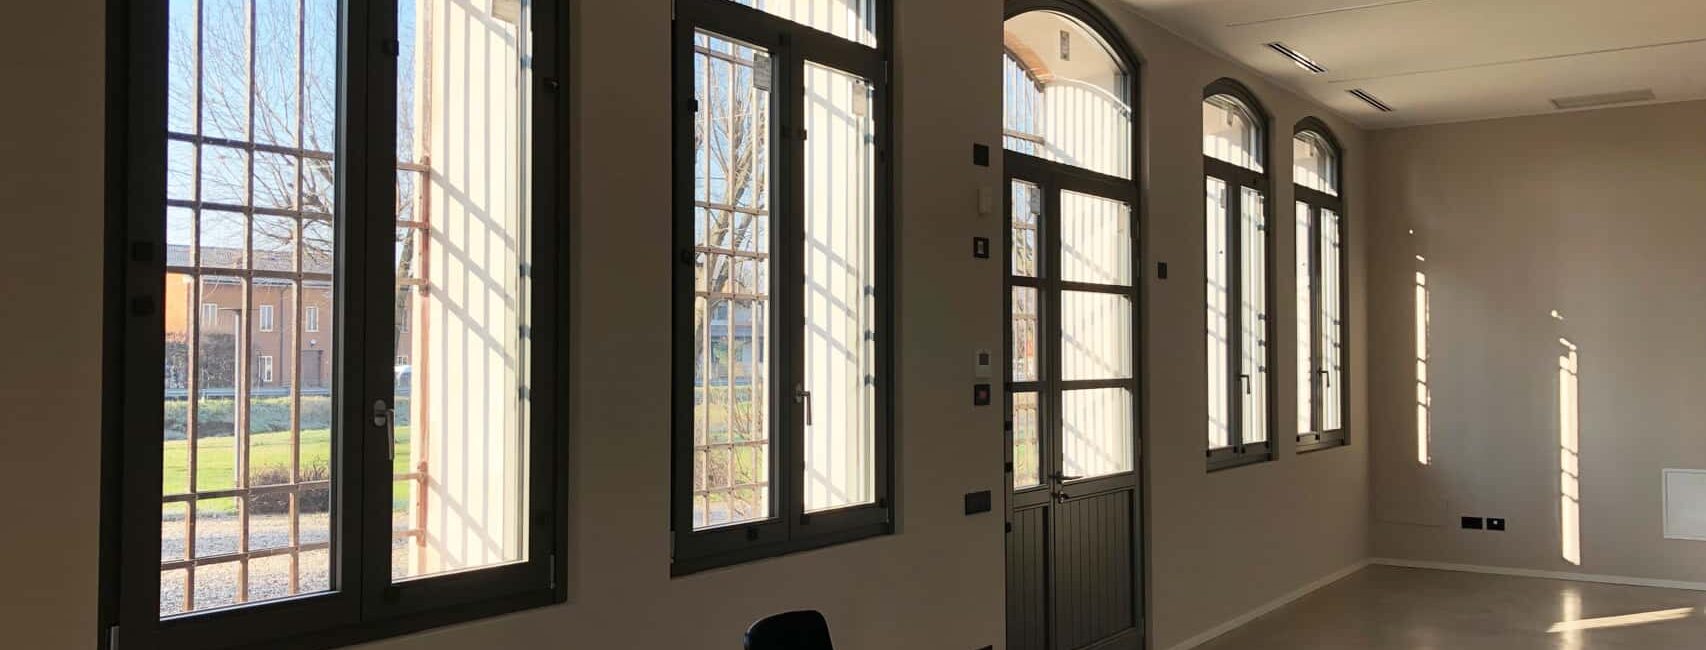 Installazione serramenti interni in legno, Portoncino ingresso e Porte interne Mantova 19